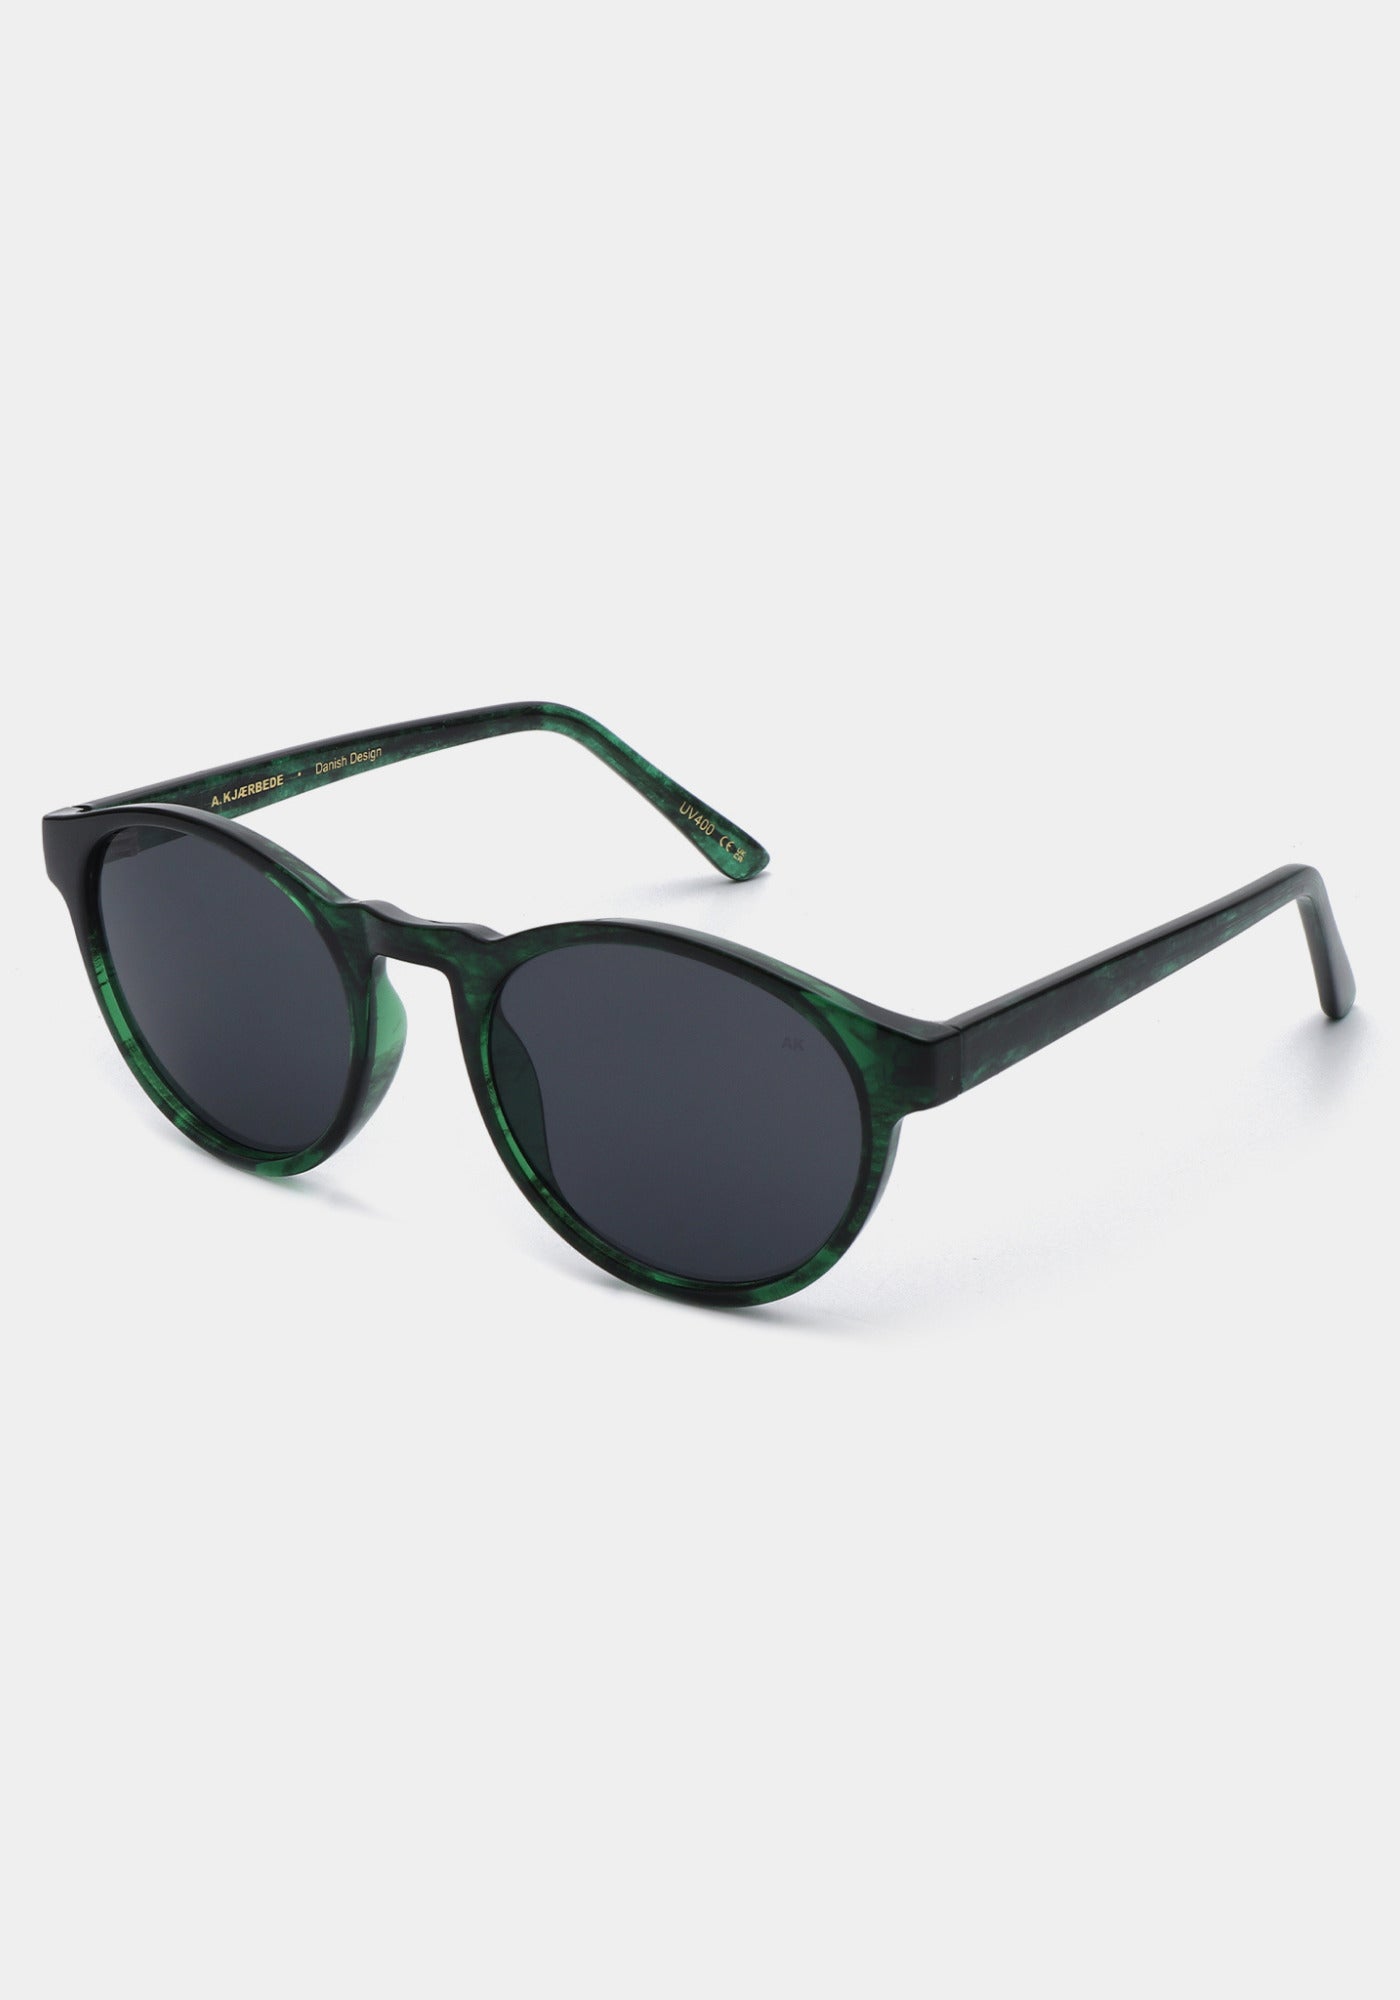 Les lunettes de soleil Marvin green marbre transparent de chez A.Kjaerbede